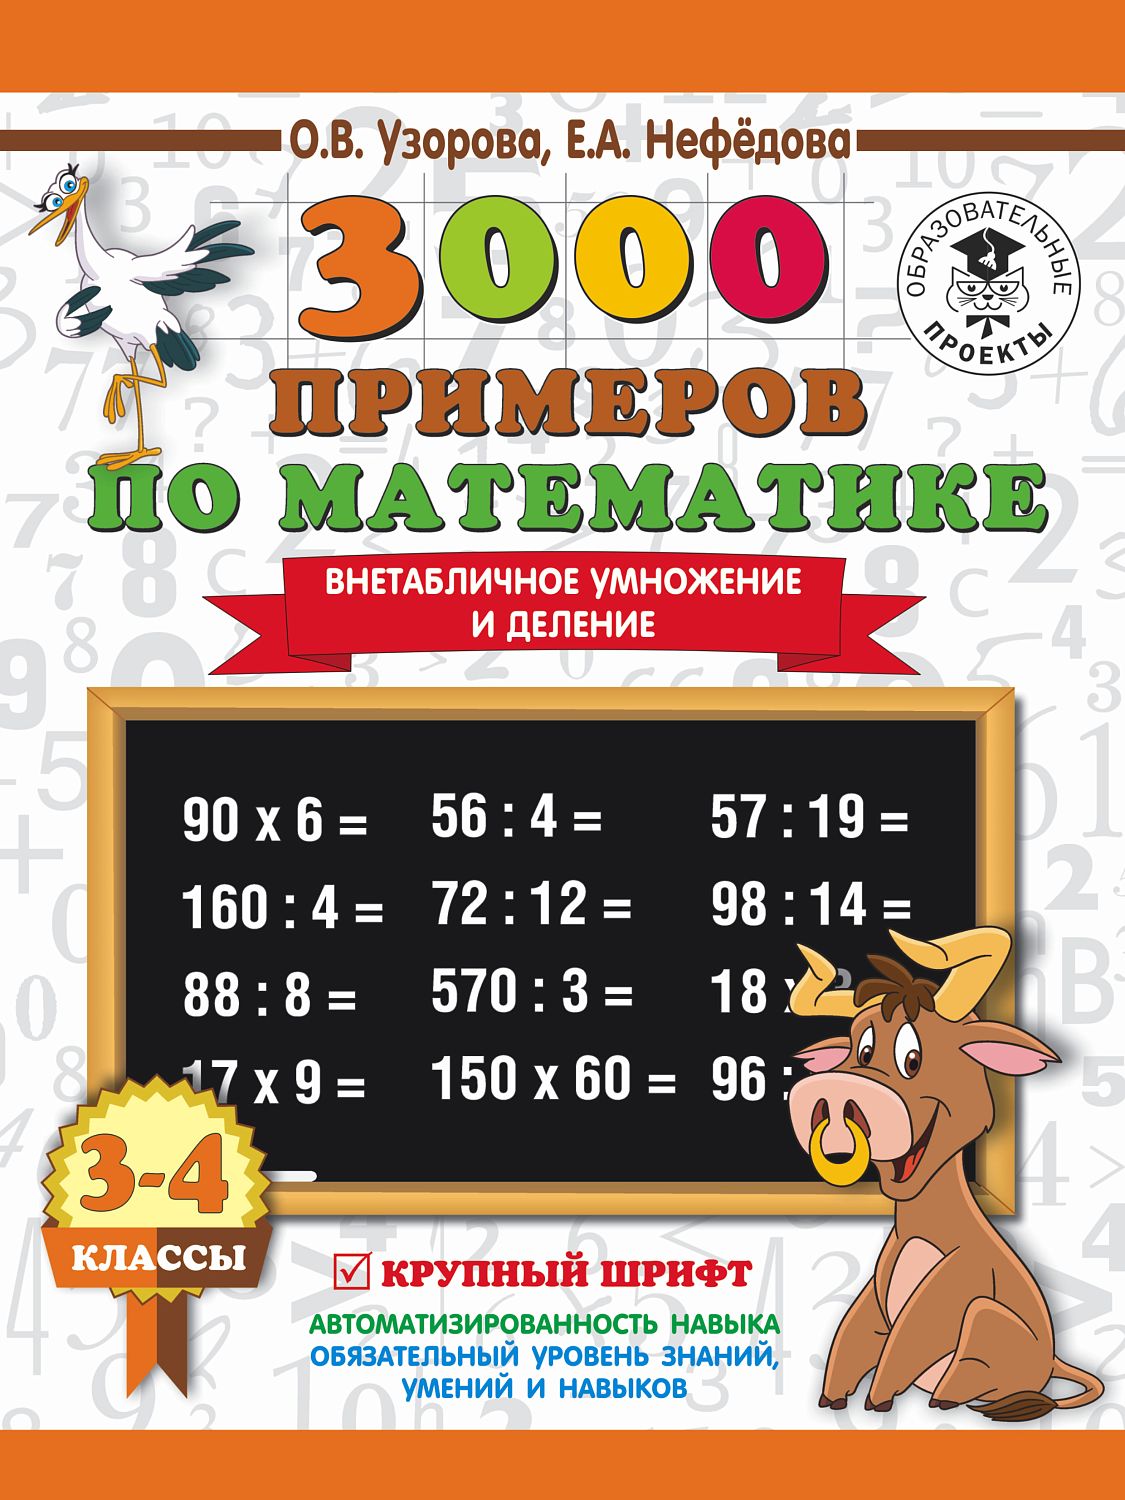 АСТ 3000 примеровНачШк/3000 примеров по математике. 3-4 класс. Внетабличное умножение и деление. Крупный